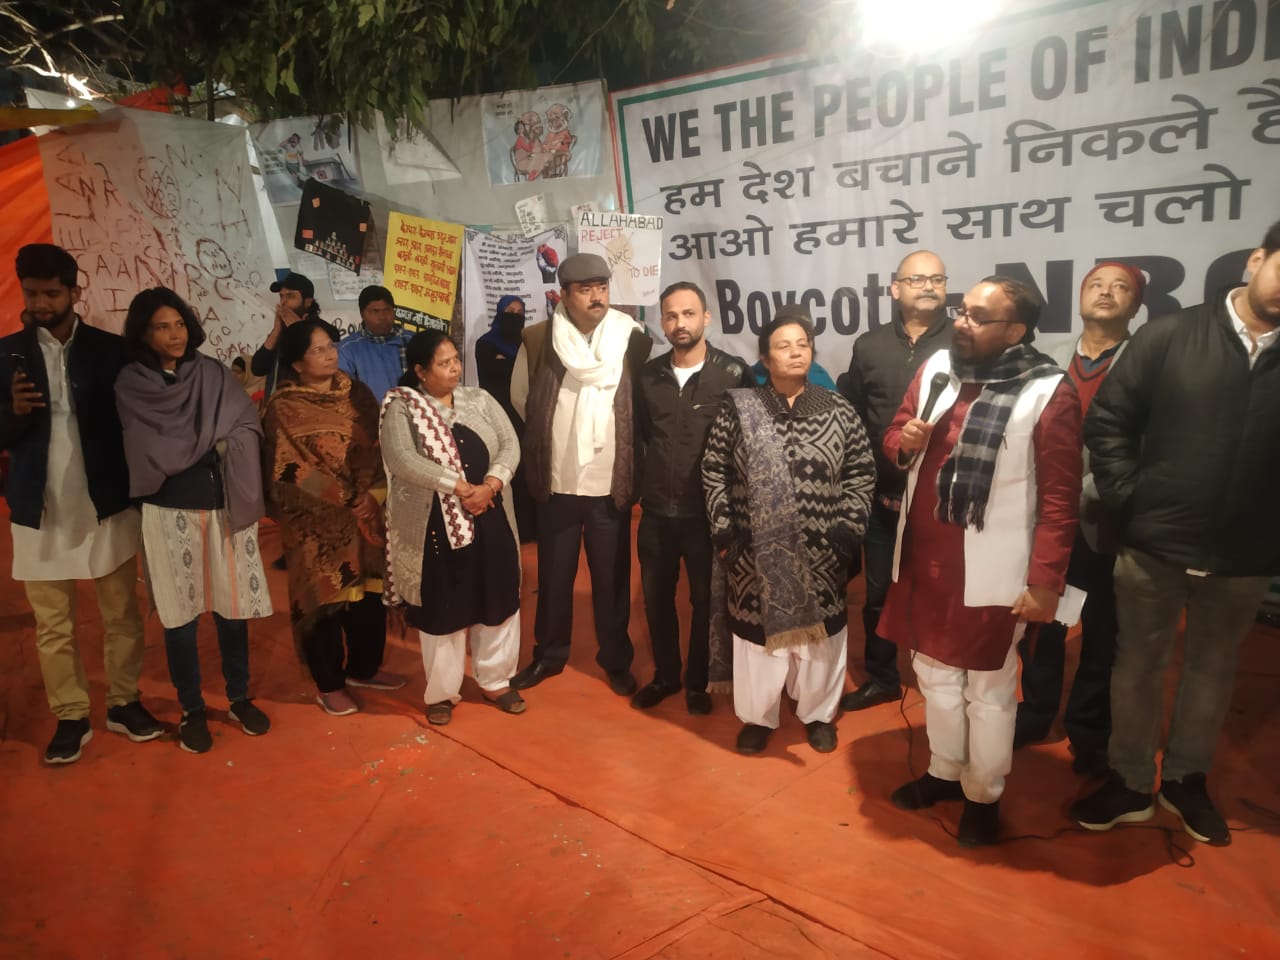 एनआरसी और सीएए का विरोध नित नई ऊंचाई छू रहा है, अकबरपुर से प्रयागराज के मंसूर अली पार्क पहुंचा मुस्लिम महिलाओं का बड़ा जुलूस | New India Times